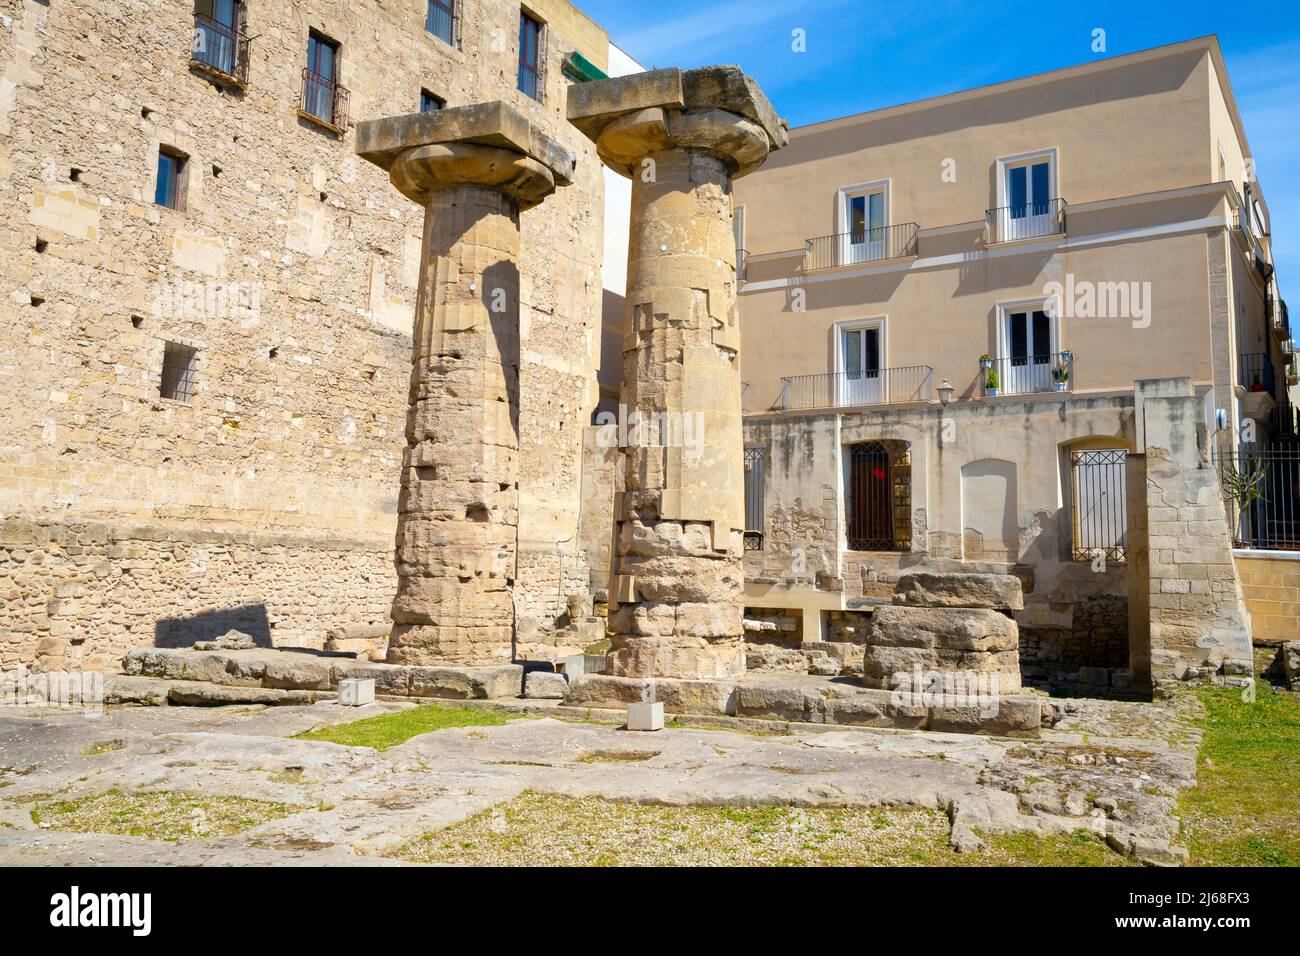 Dorische Säulen im archaischen griechischen Tempel, Taranto, Provinz Taranto, Region Apulien, Italien. Stockfoto